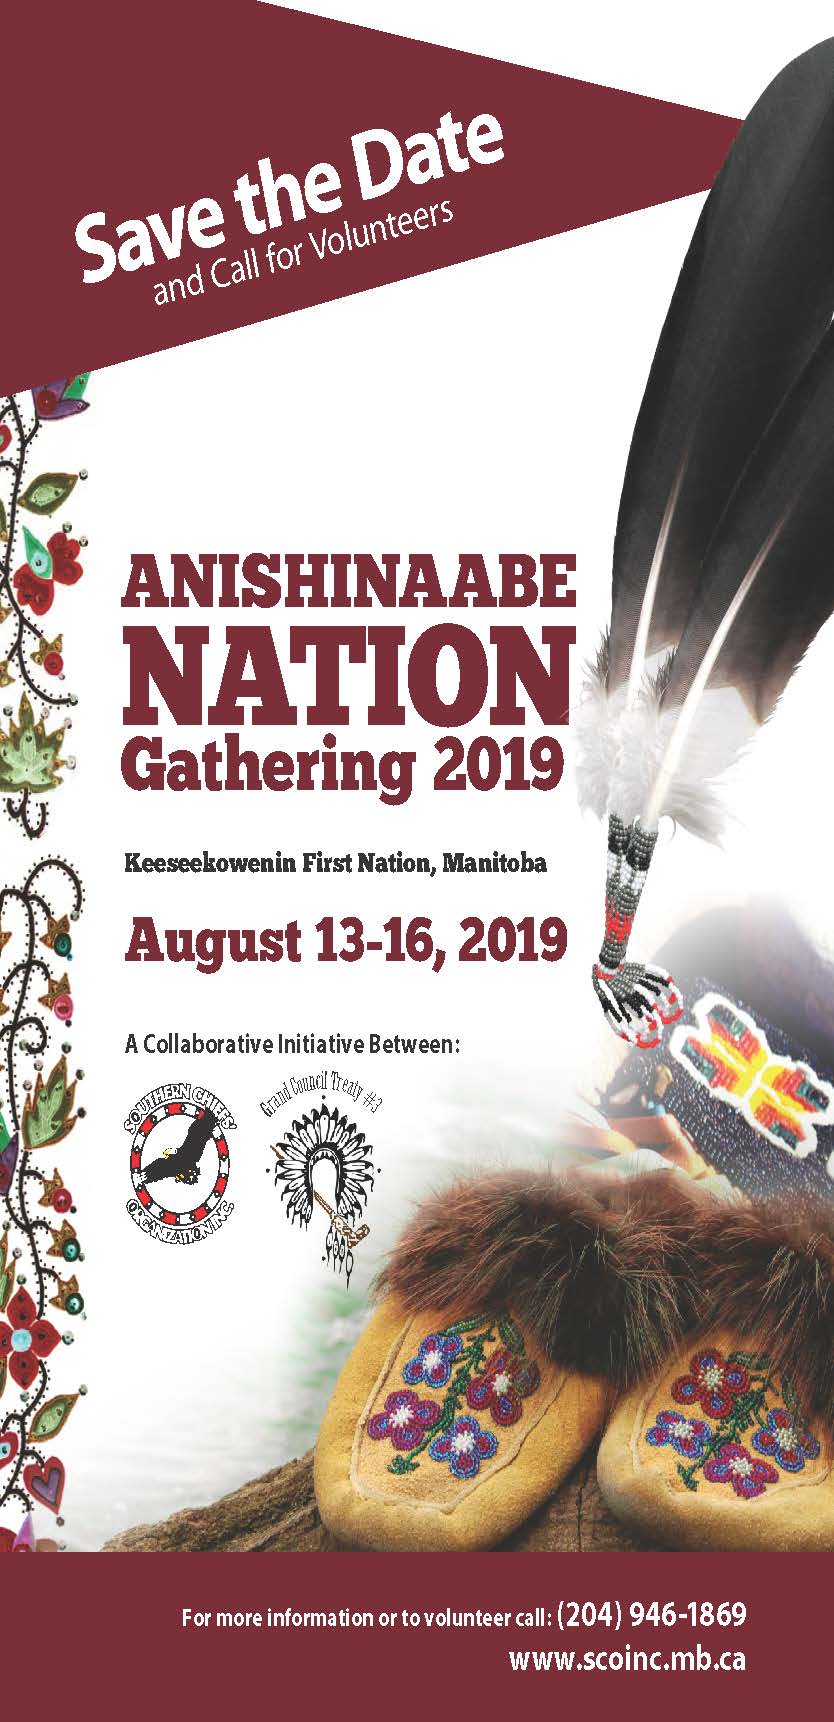 Anishinaabe Nation Gathering 2019